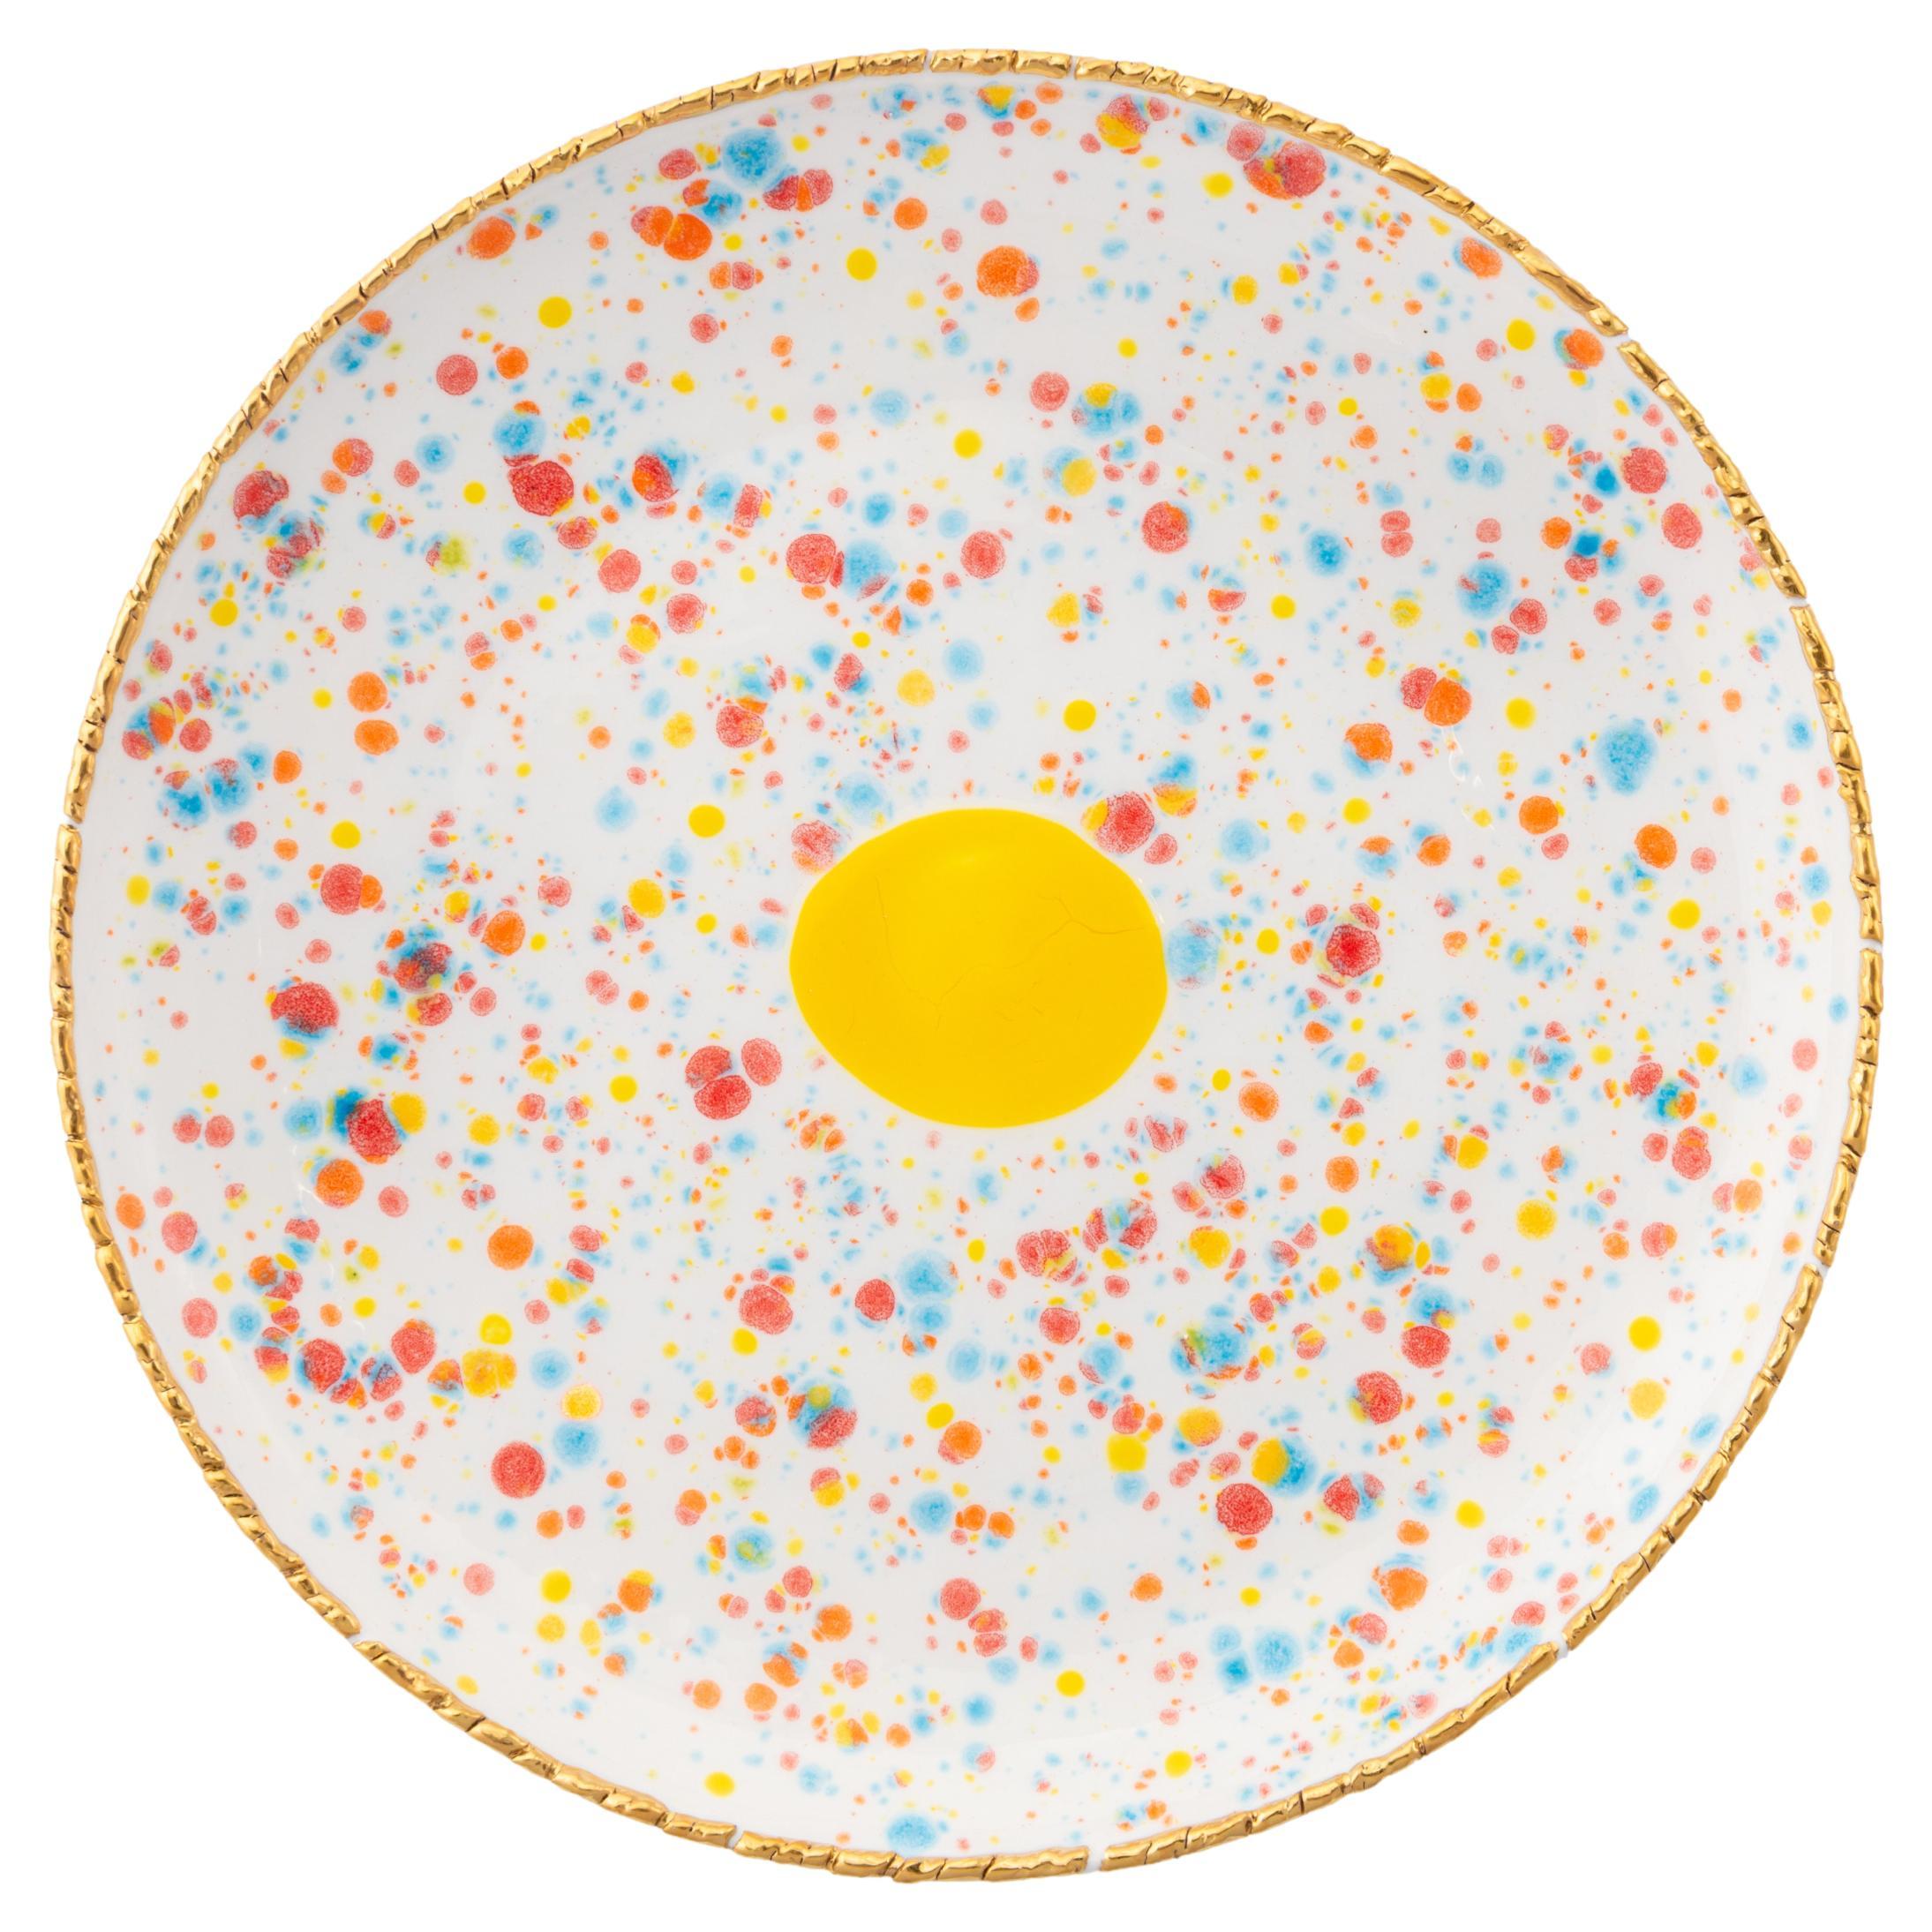 Coupe-plat contemporain or plaque peinte à la main porcelaine vaisselle